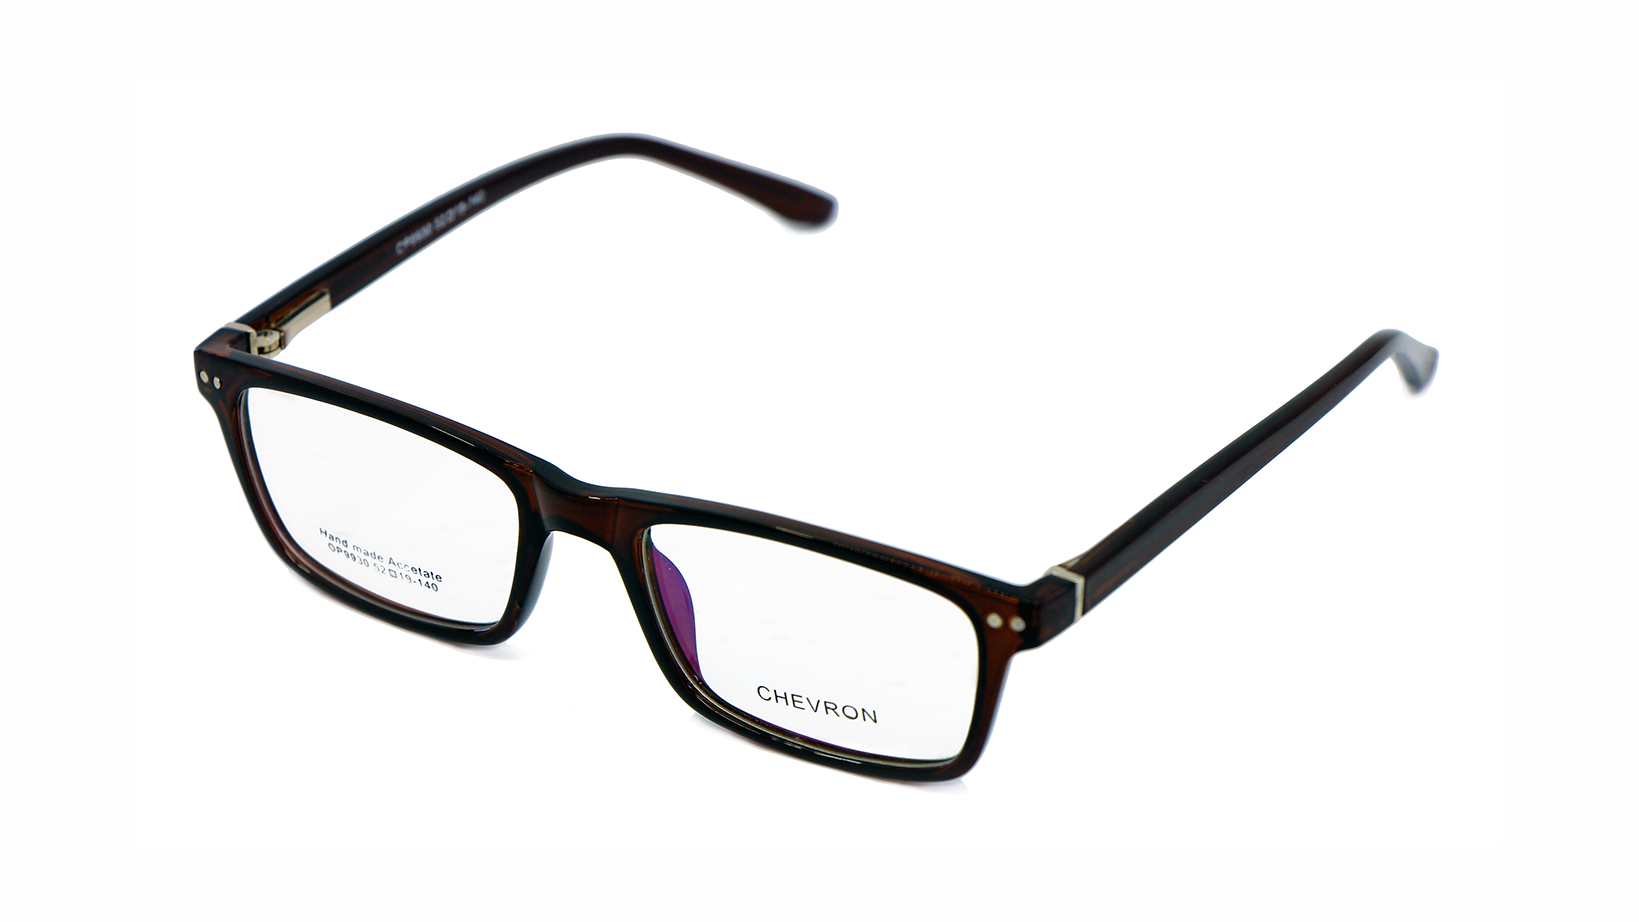 Native Square Eyewear Full Frame Plastic Glasses 9930